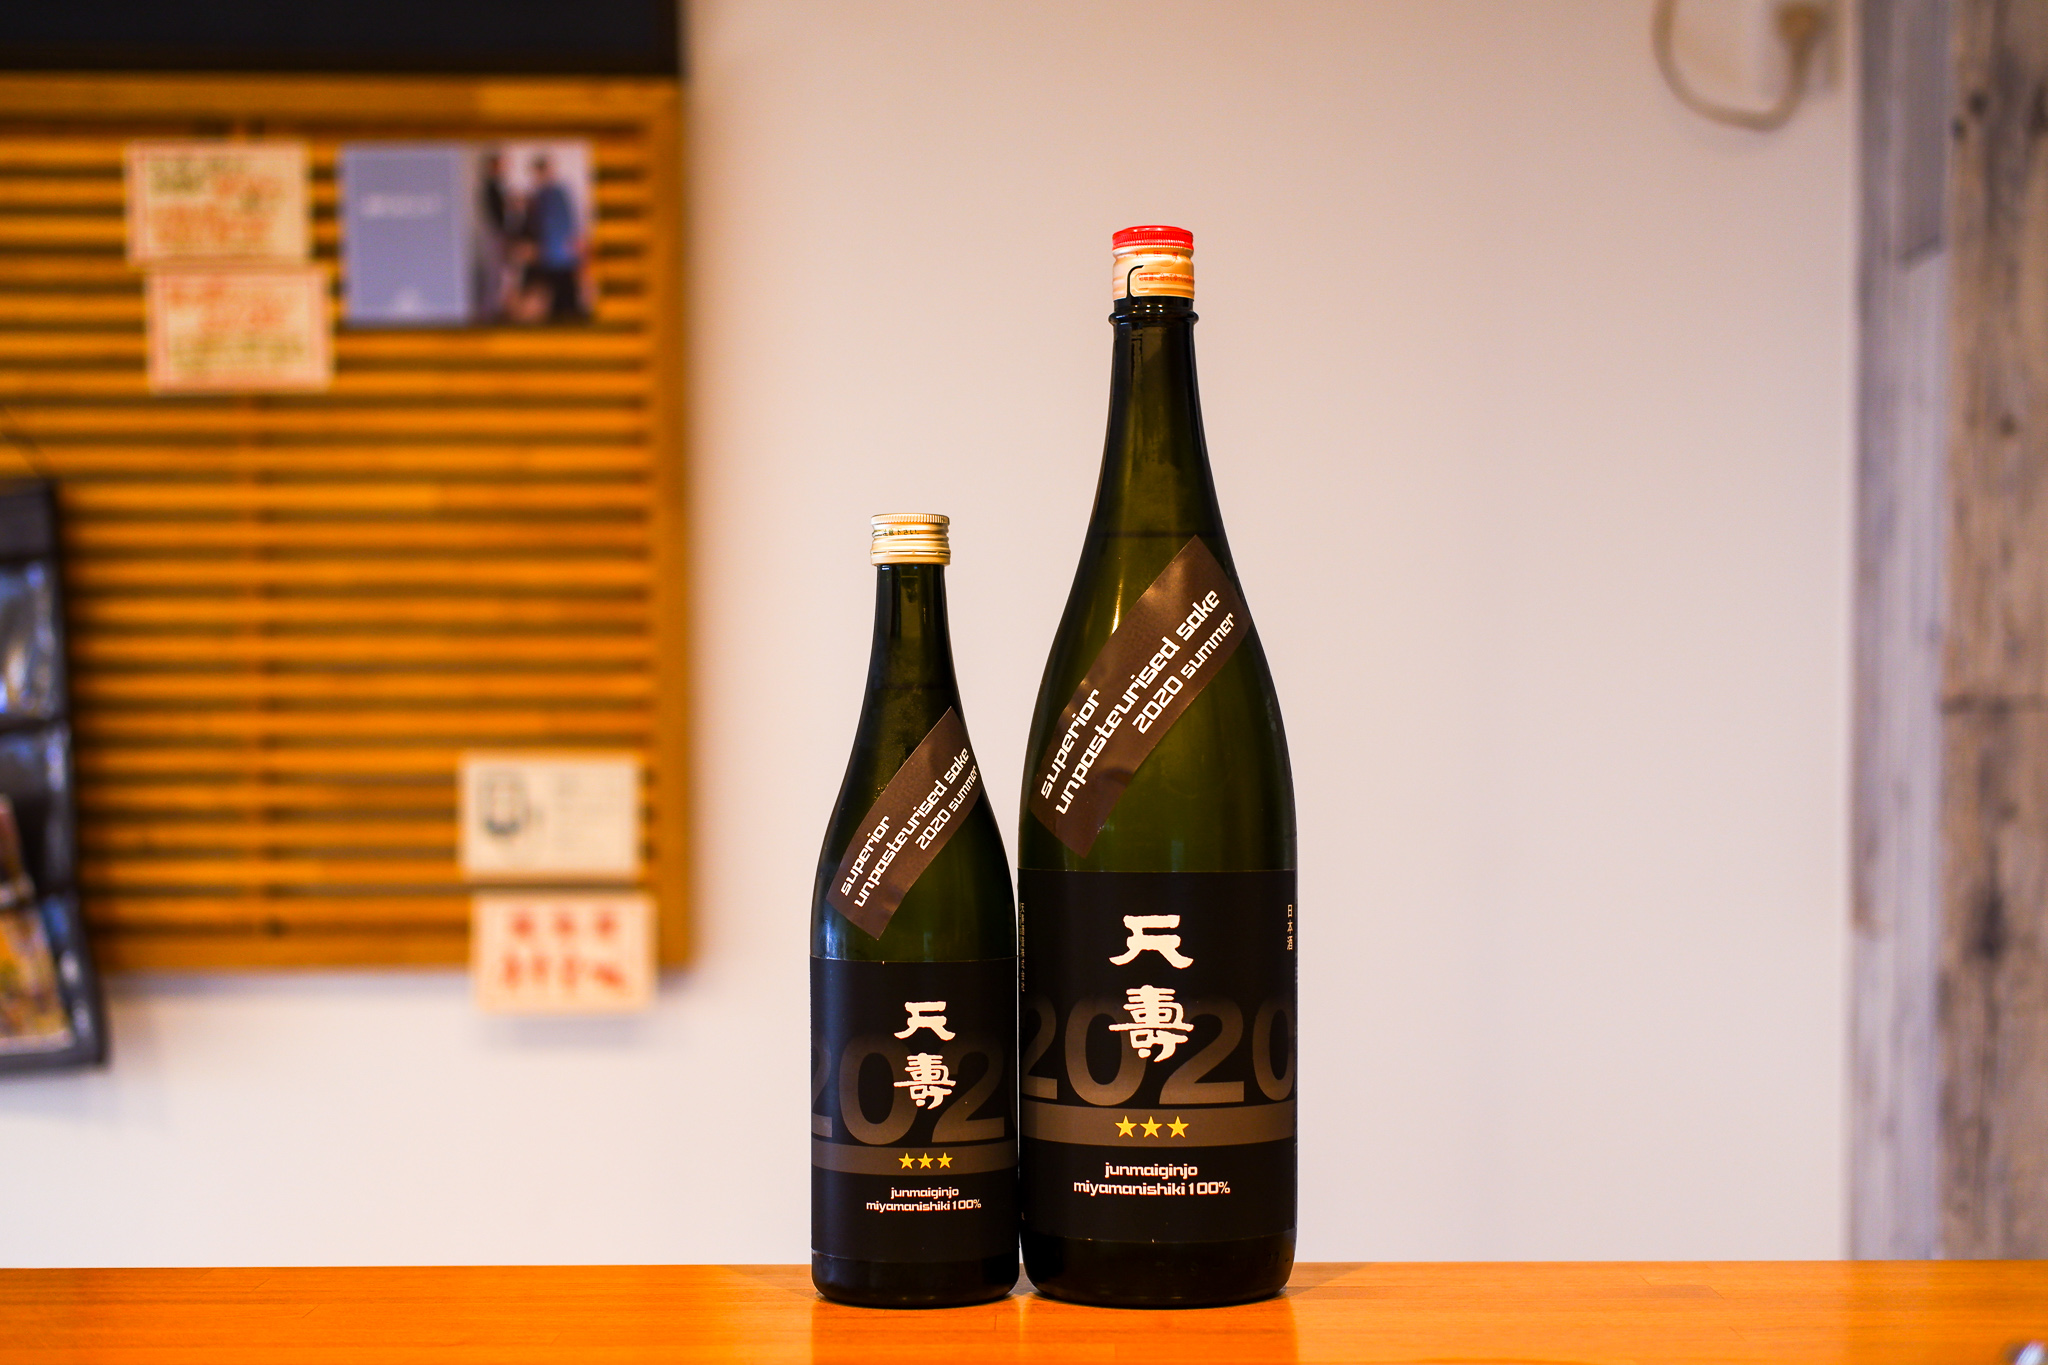 天寿 純米吟醸 夏の隠し生酒(三ツ星)Ver.2020が入荷 | くわな屋 埼玉県北本市のワイン日本酒中心のお店